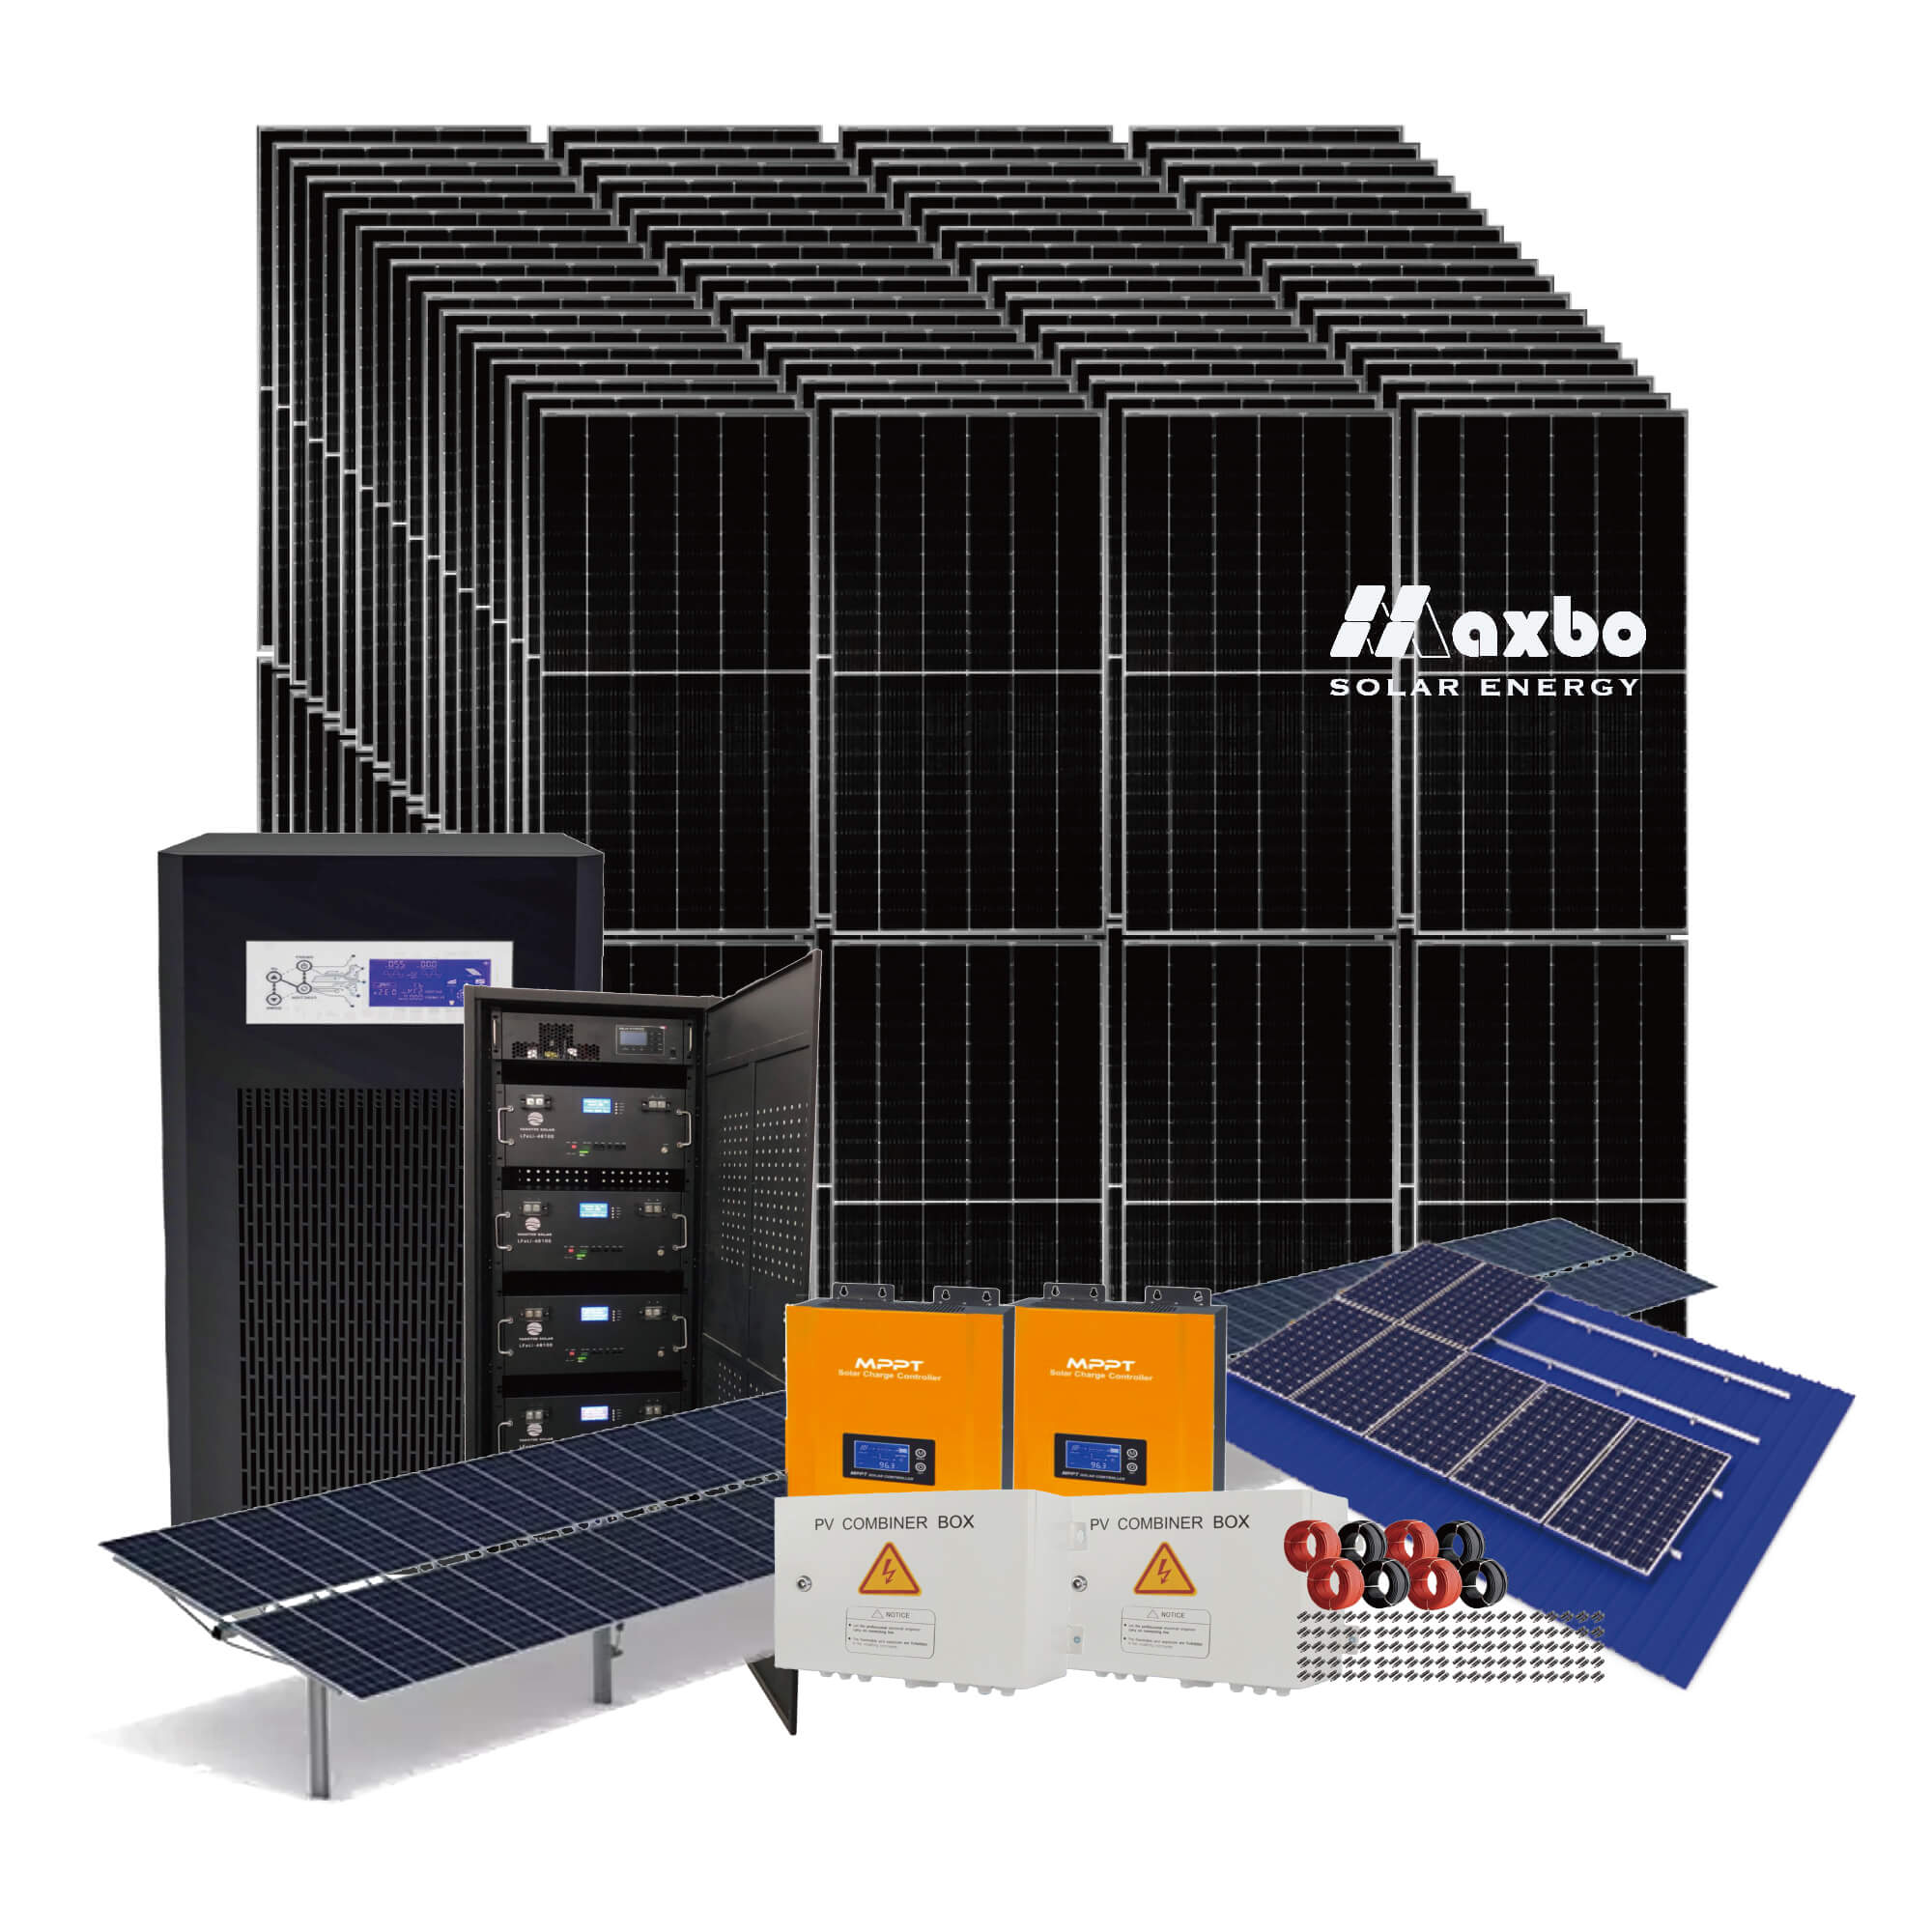 Soluciones de sistema de energía solar fuera de la red de 80kW Fábrica Maxbo Todo en uno